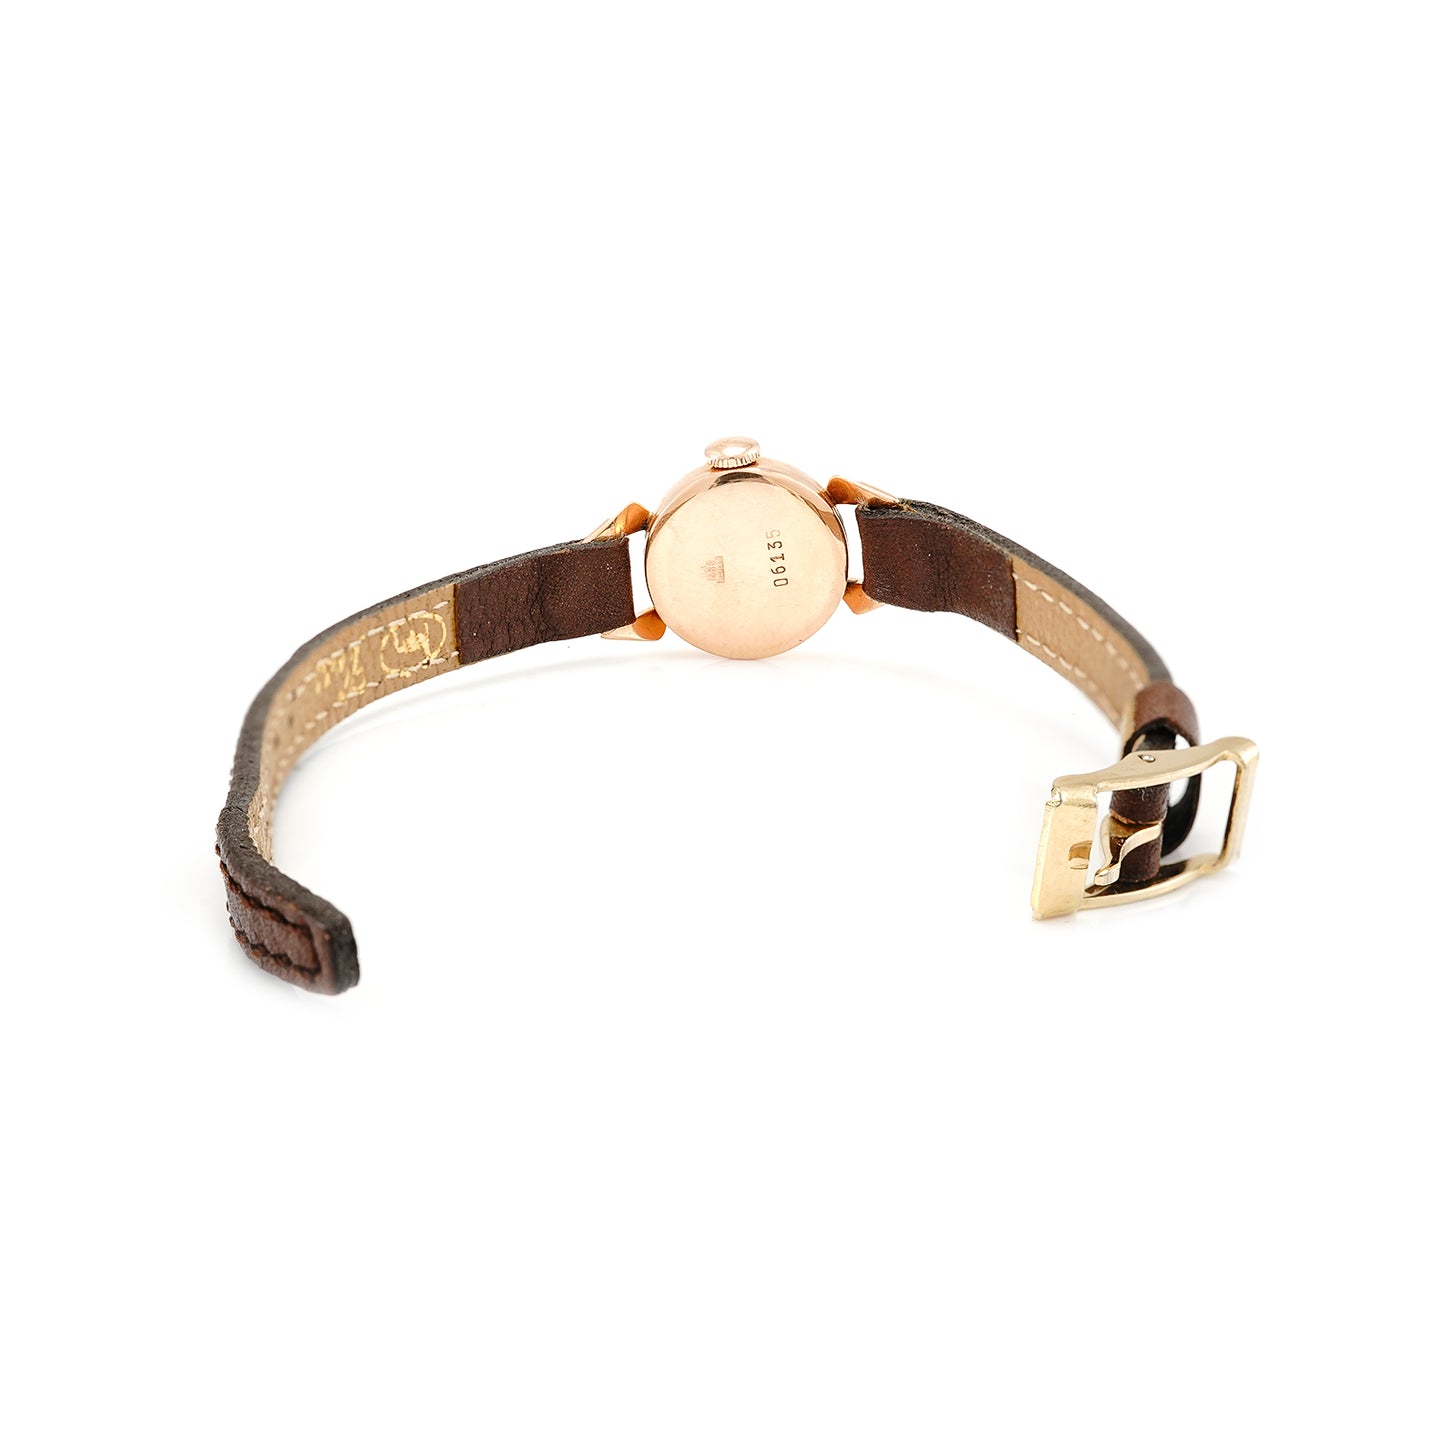 Vintage Armbanduhr Aufzugsuhr Chaika 583 14K Rosegold Rotgold Damenuhr Lederband